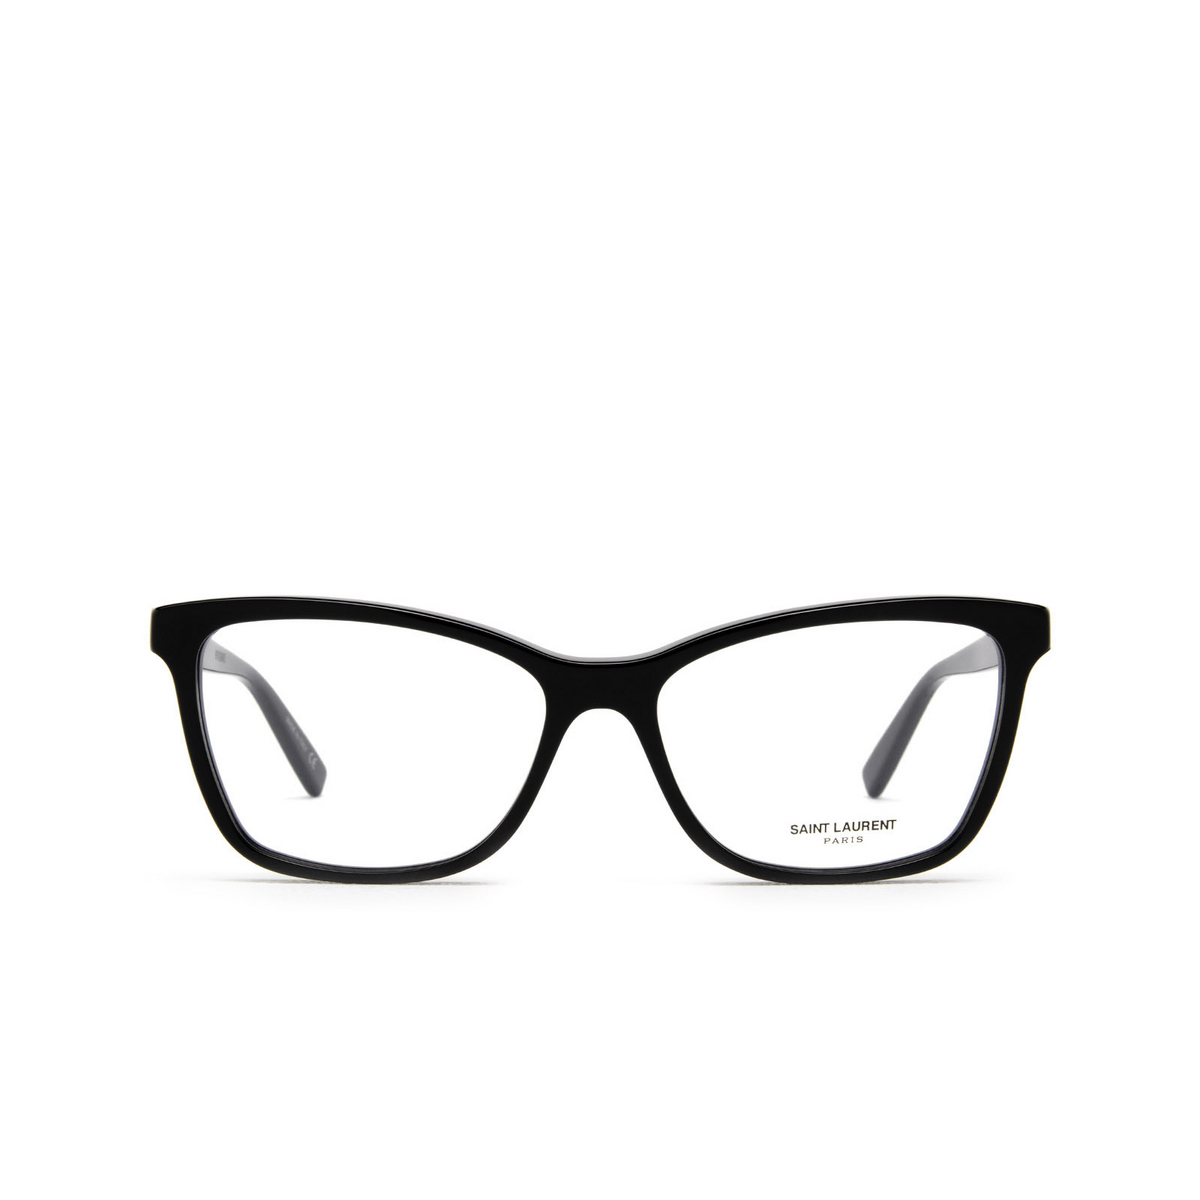 Saint Laurent SL 503 Eyeglasses 001 Black - front view